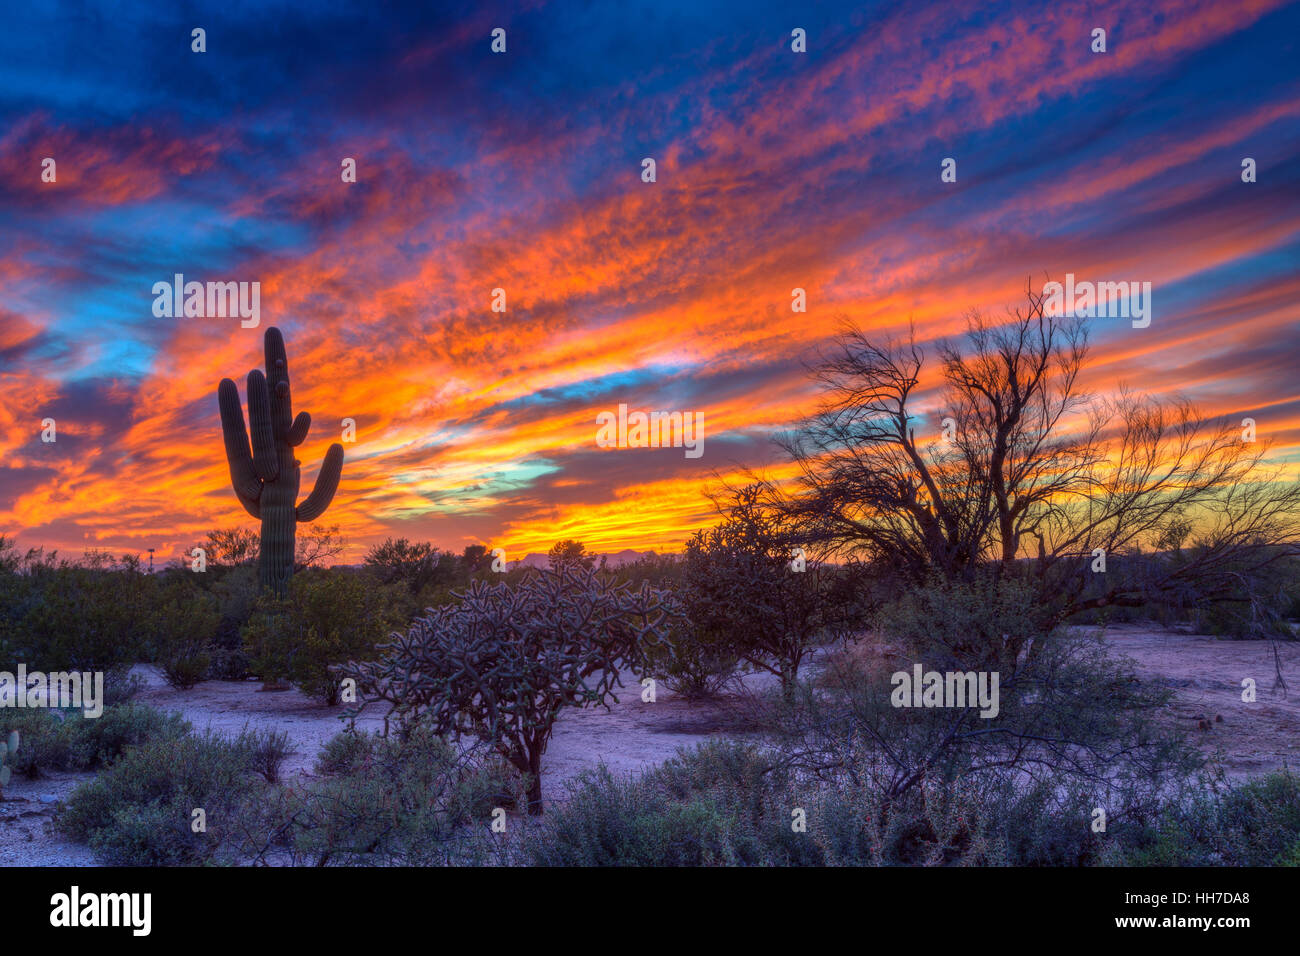 Desert landscape with saguaro cactus (Saguaro) at sunset, Saguaro National Park, Arizona, USA Stock Photo